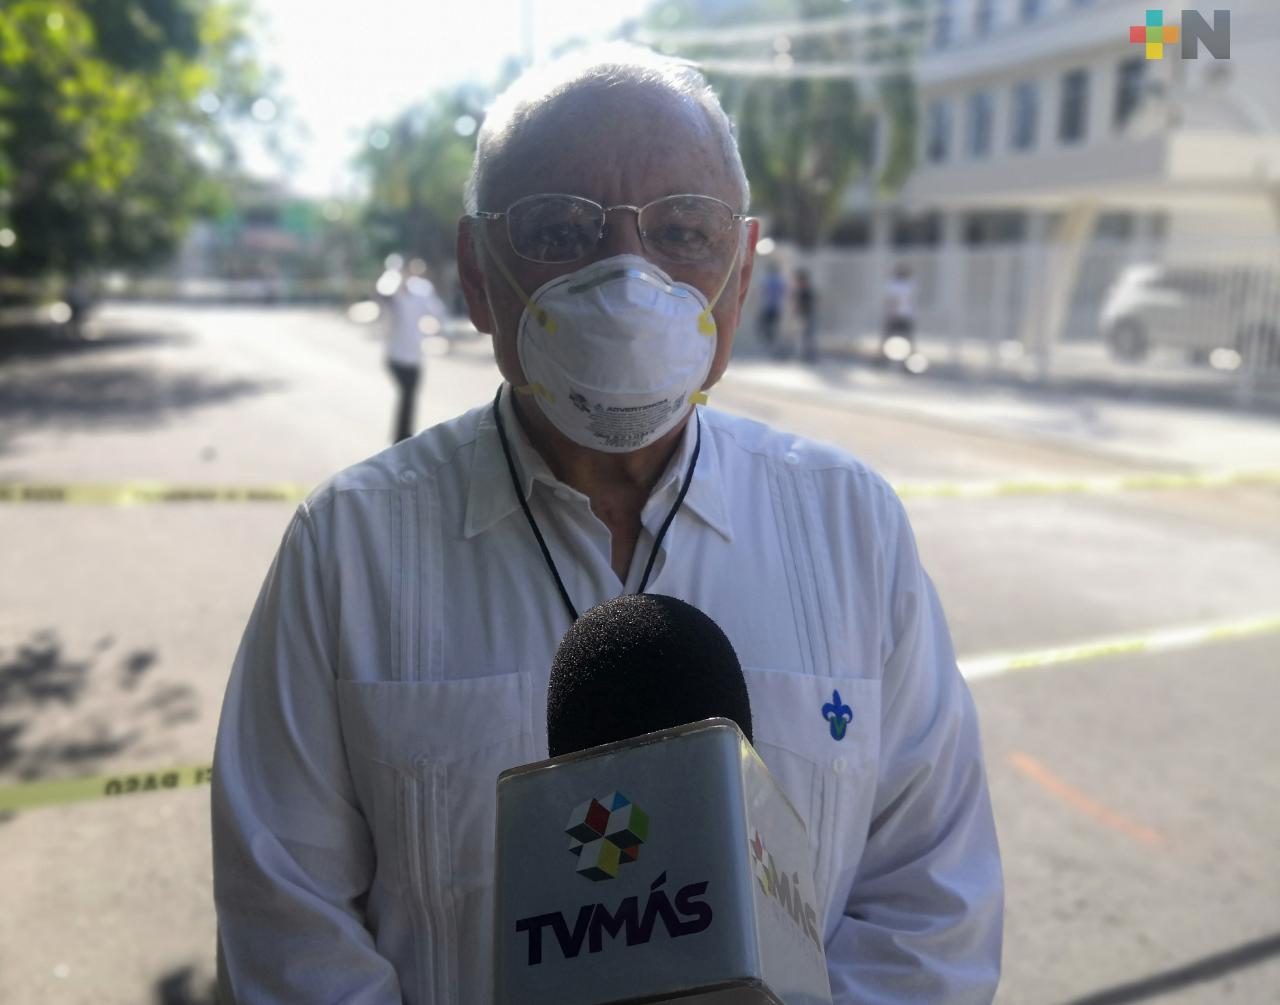 Menos de 5 aspirantes a la UV presentaron síntomas de COVID-19 en región de Veracruz